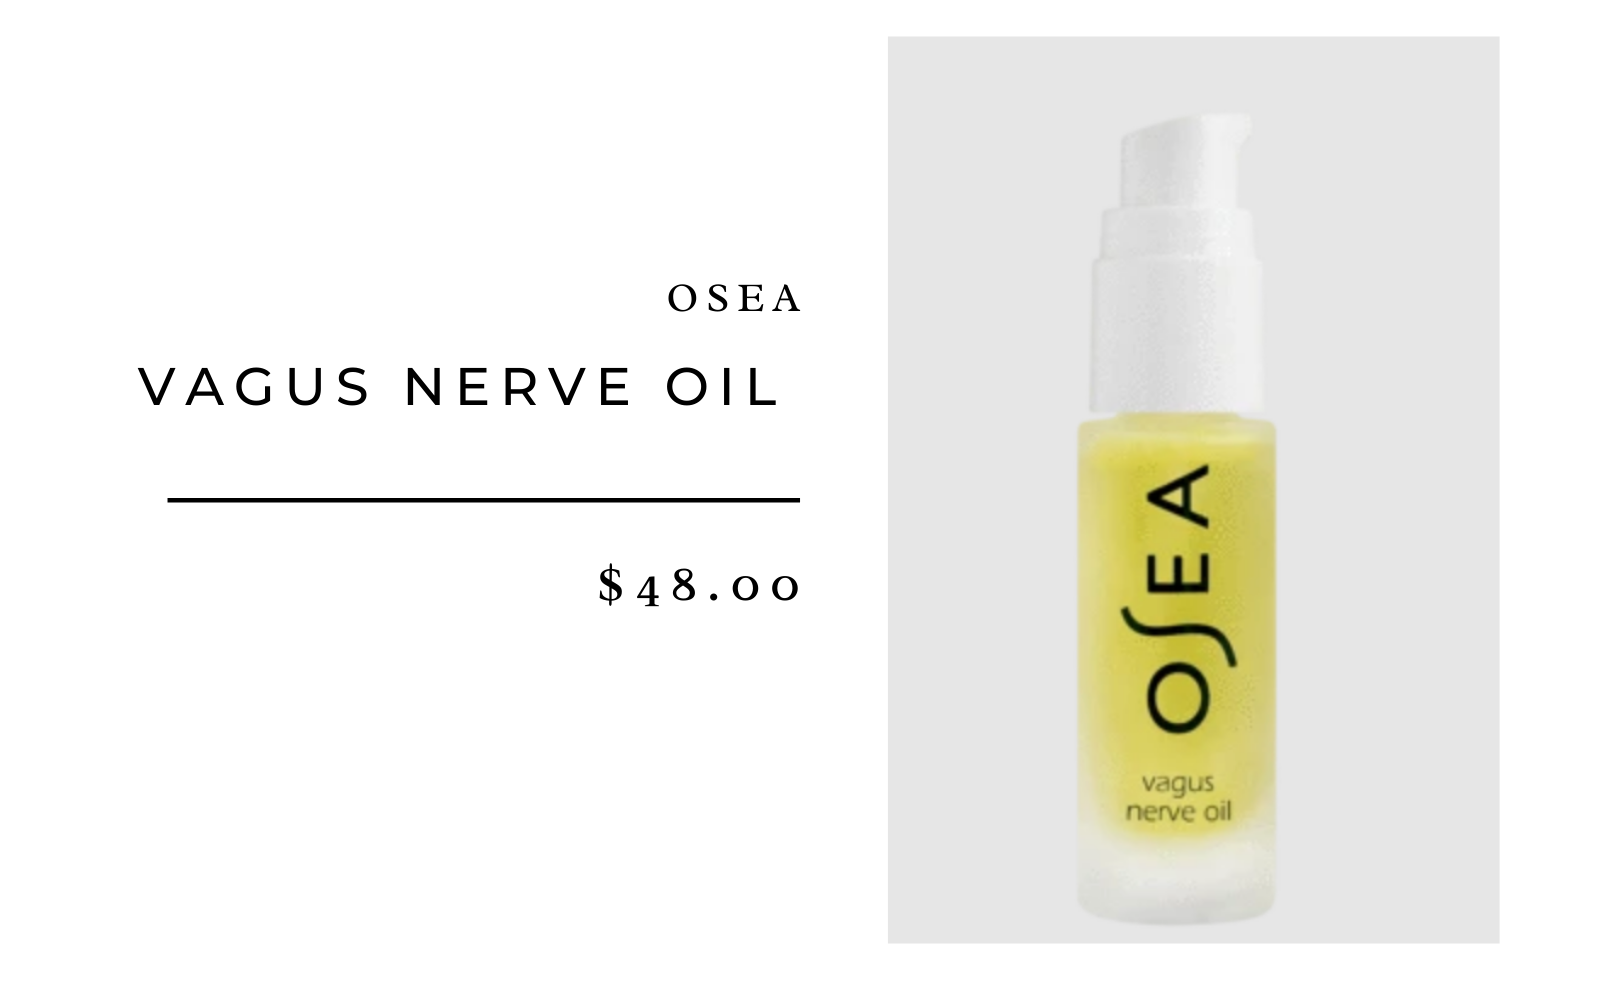 Osea Vagus Nerve Oil